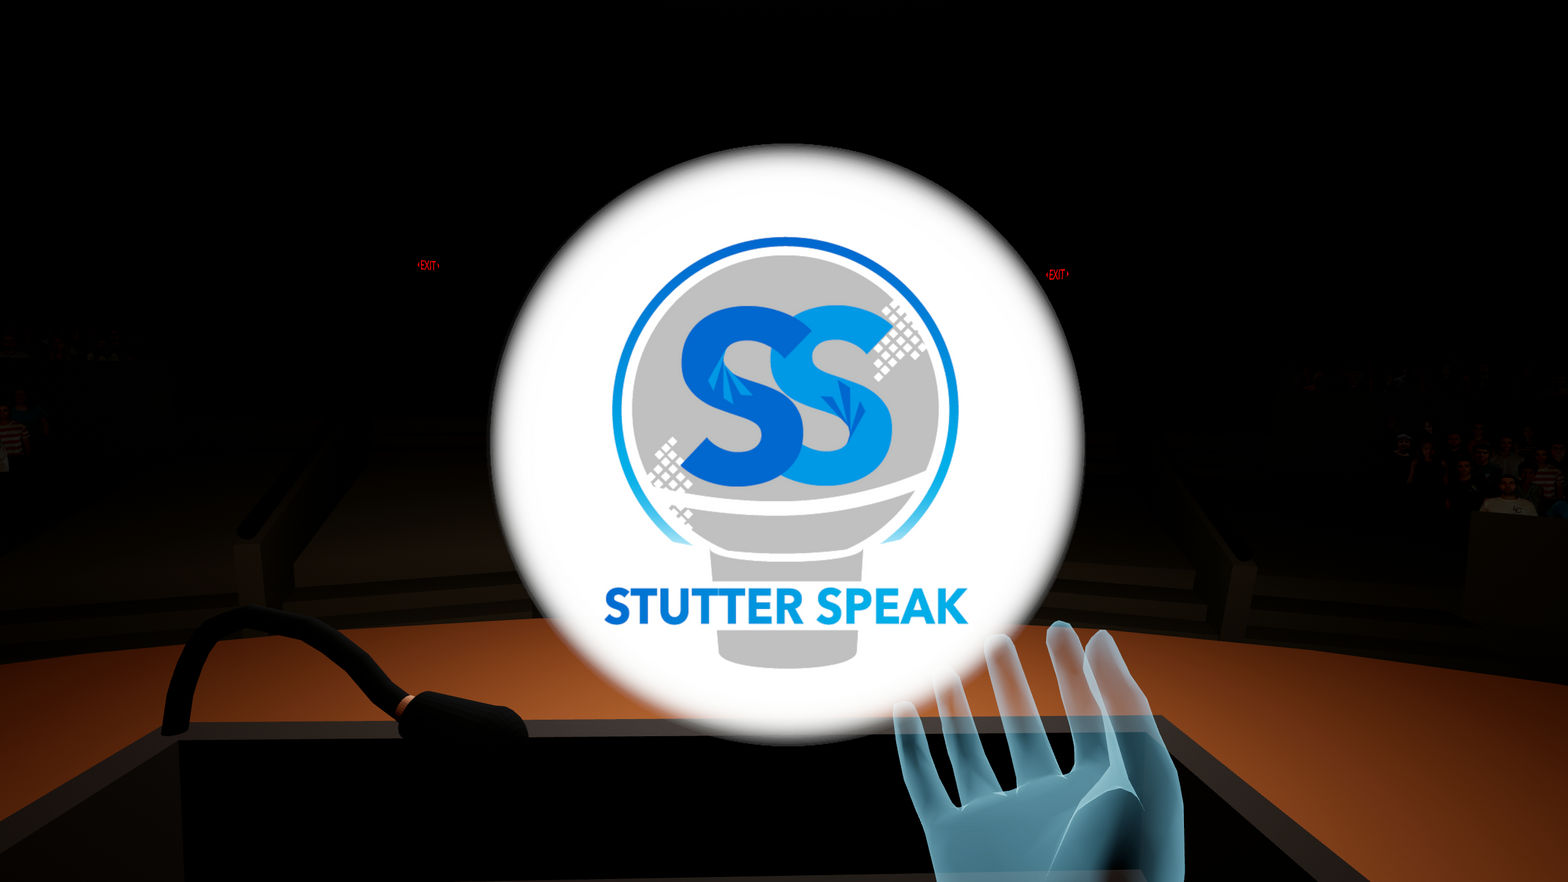 Stutter Speak